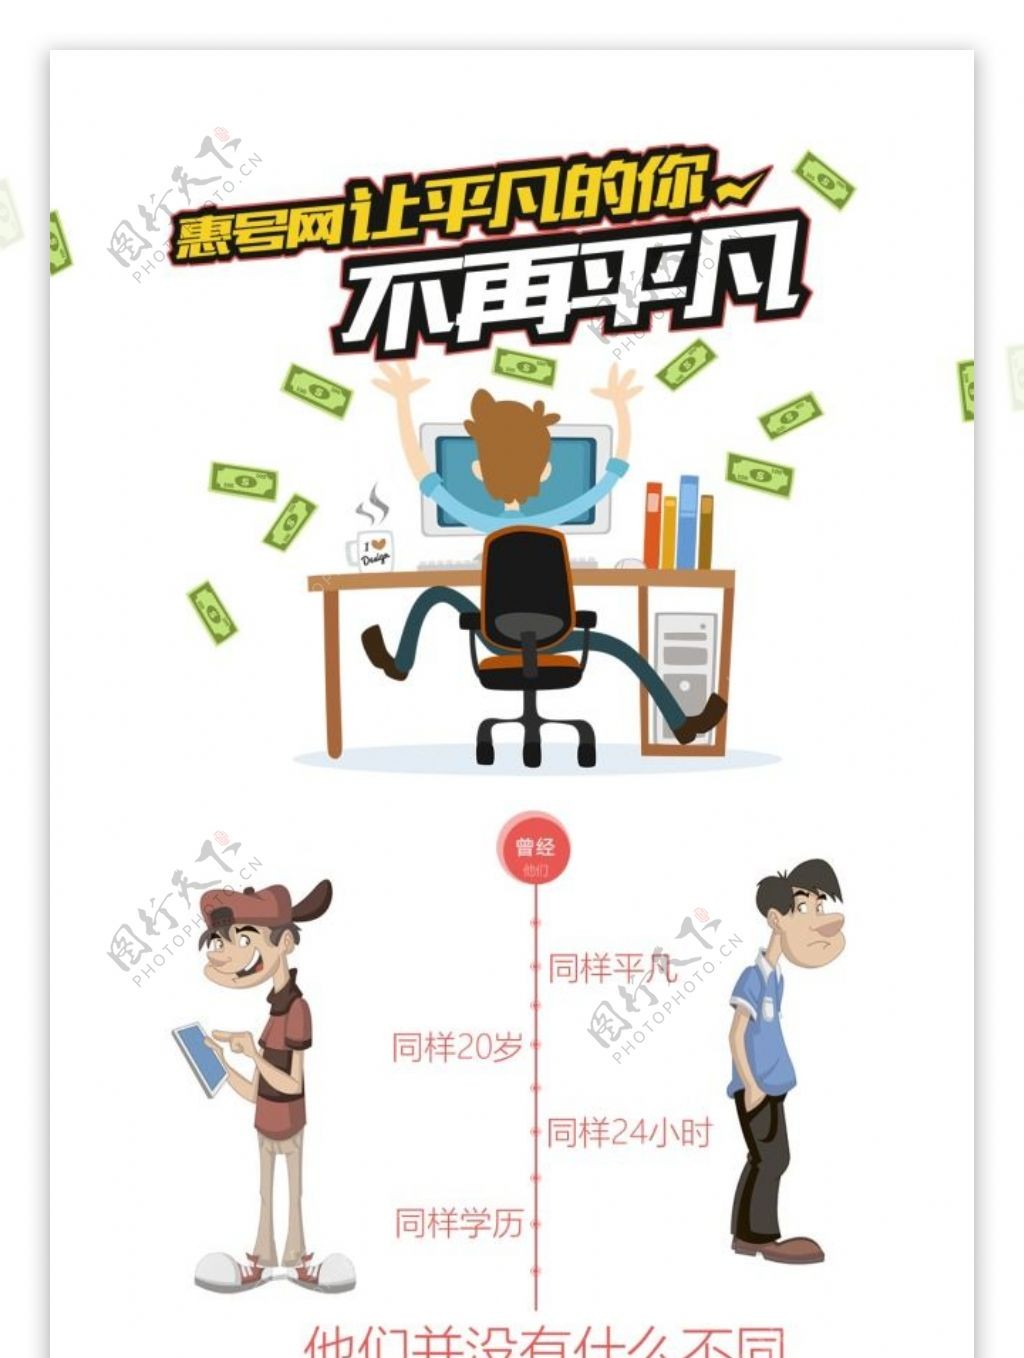 惠号网推广海报